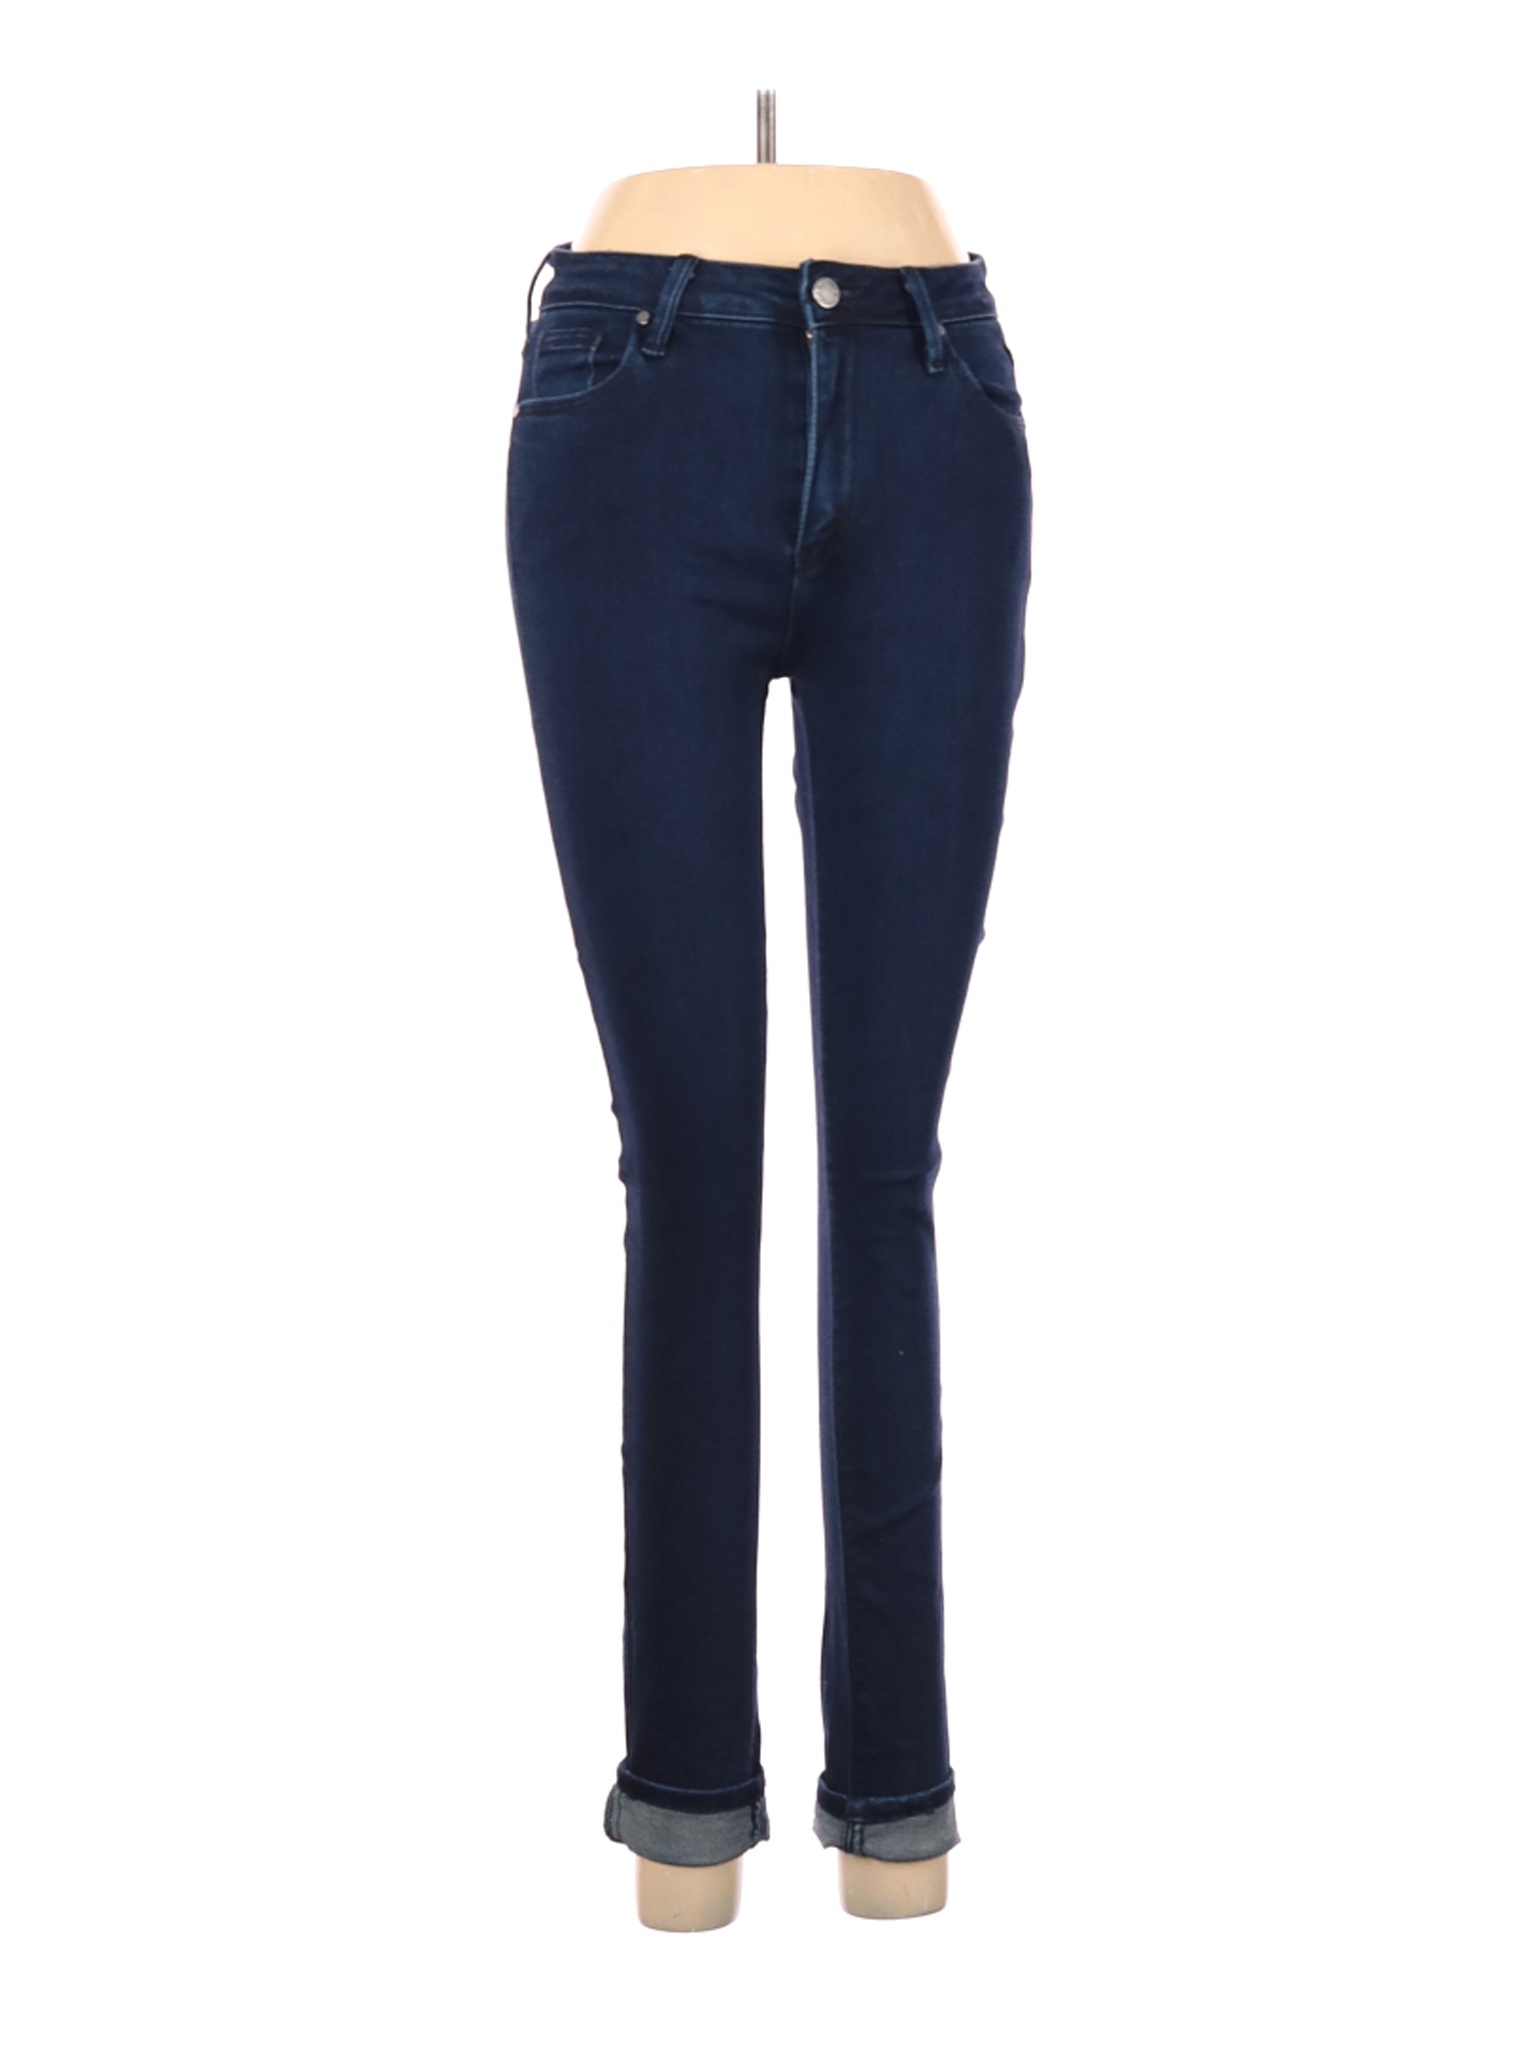 Just Black Women Blue Jeans 26W | eBay